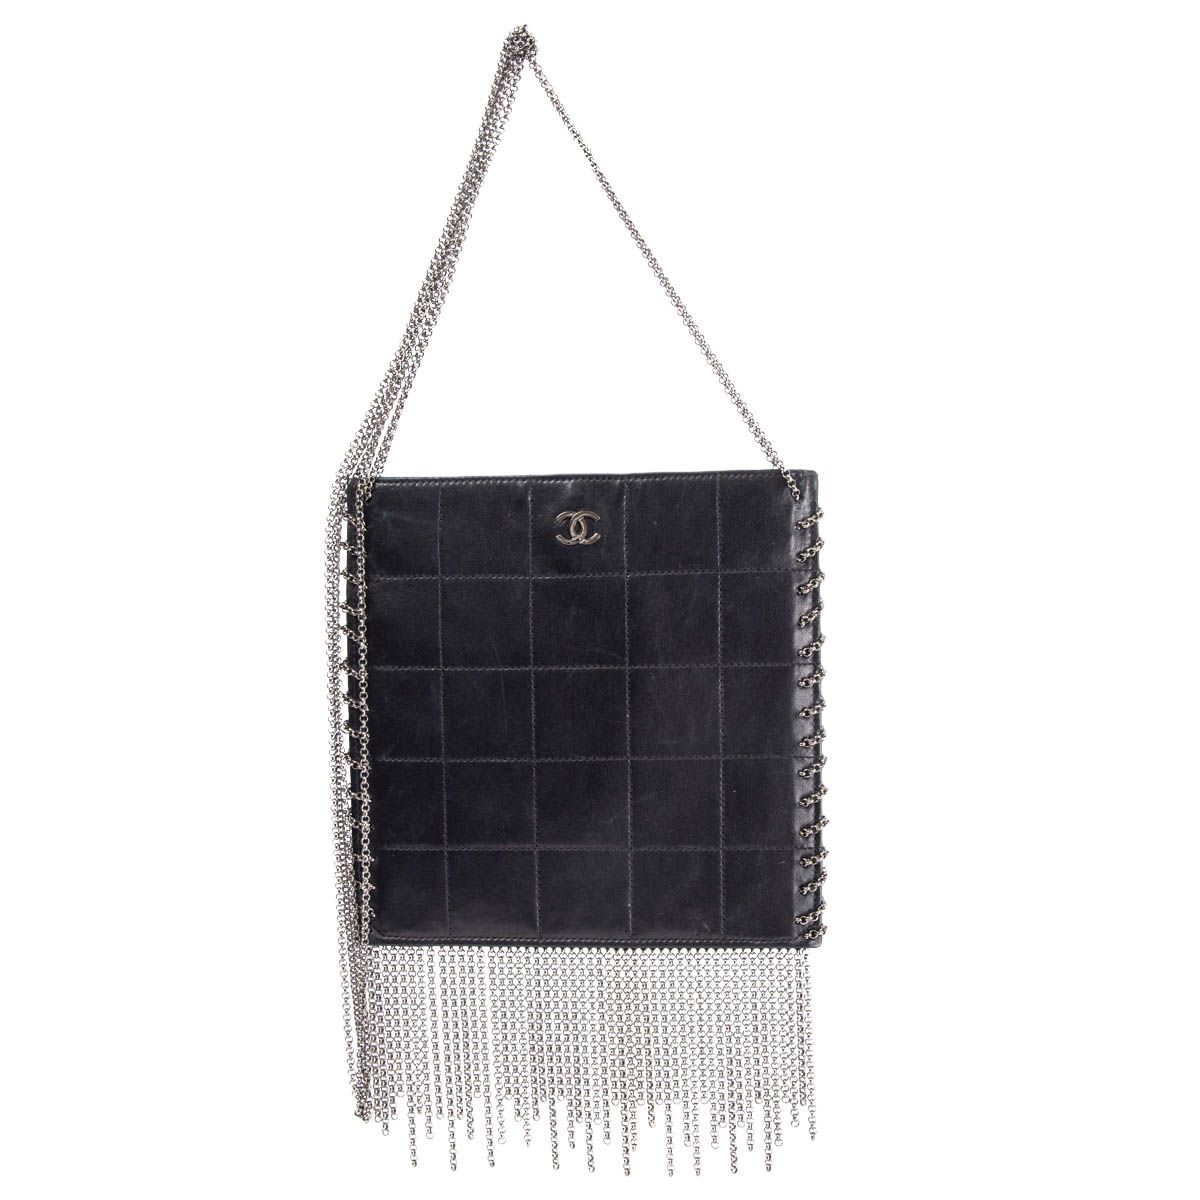 Chanel Mini Bucket Fluffy Chain Black Lambskin Gold Hardware Bag